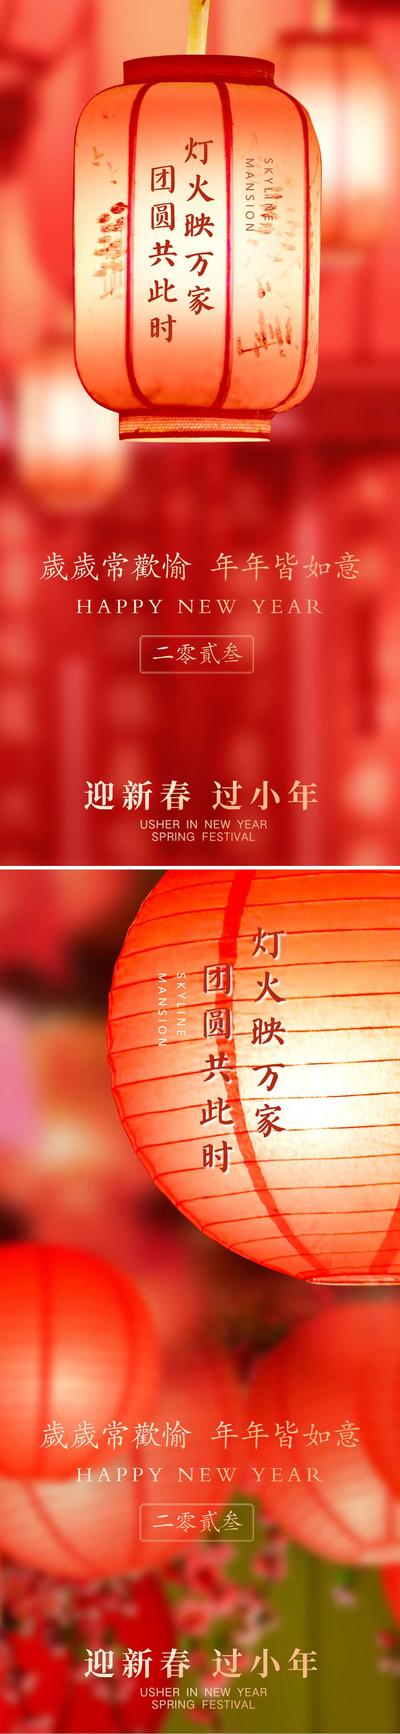 南门网 海报 中国传统节日 元宵节 春节 除夕 新年 兔年 灯笼 喜庆